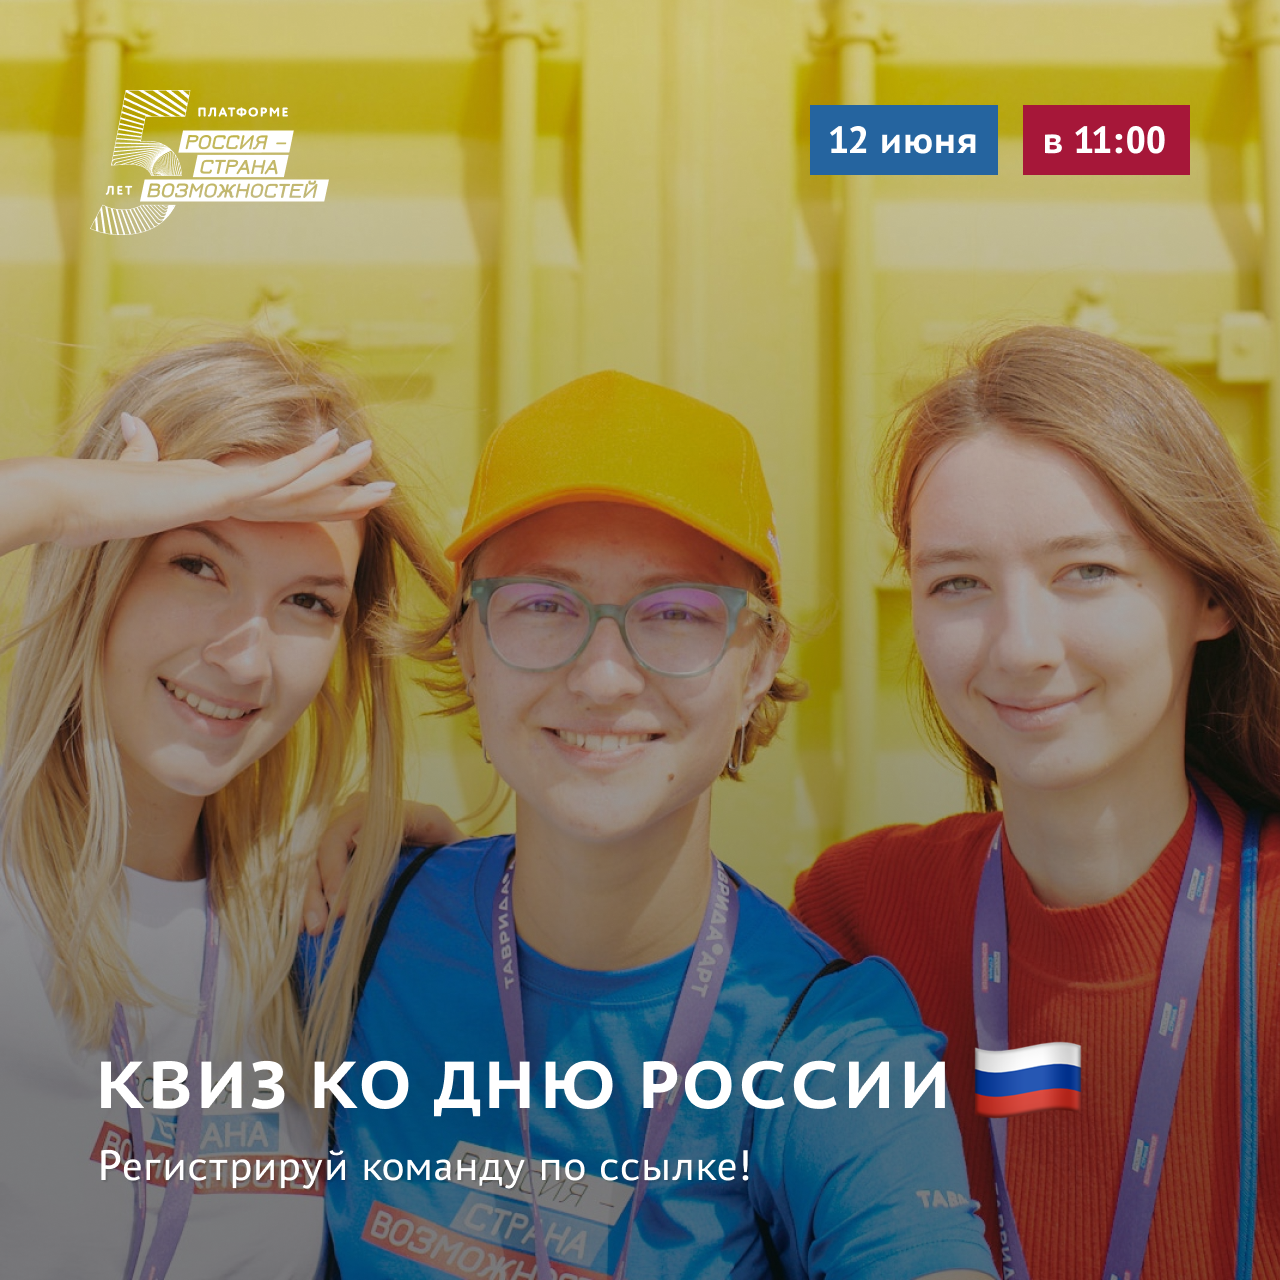 Участвуйте в квизе от платформы «Россия — страна возможностей» 12 июня